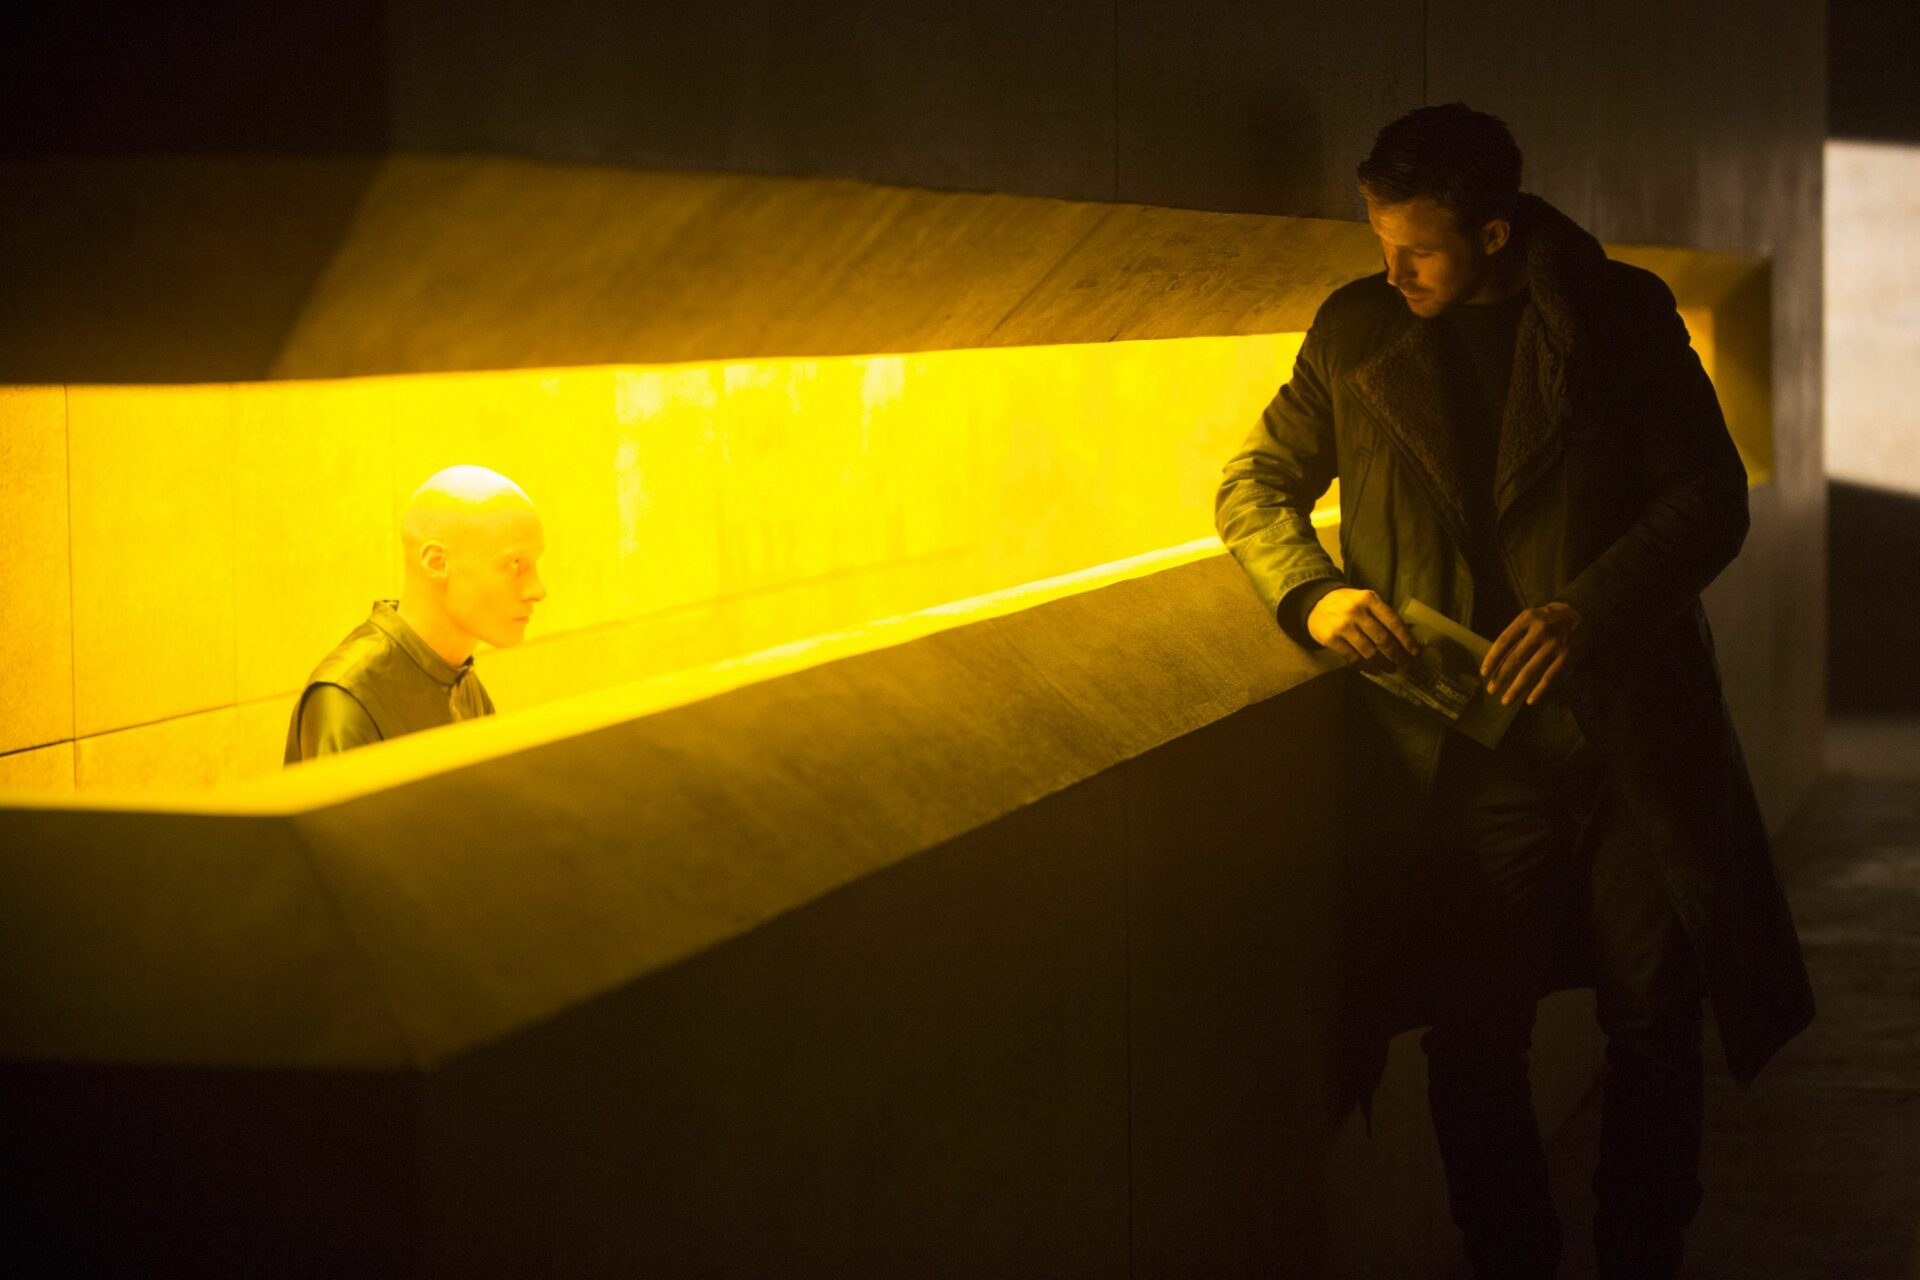 Blade Runner 2049: Das Bild zeigt einen Mann, der an eine Art Empfangstresen lehnt. Am Tresen sitzt ein glatzköpfiger Mann, der zu dem anderen hinauf sieht. Der Tresen ist aus Beton und zeigt nur einen kleinen Schlitz der gelb leuchtet, aus dem der glatzköpfige Mann heraus blickt